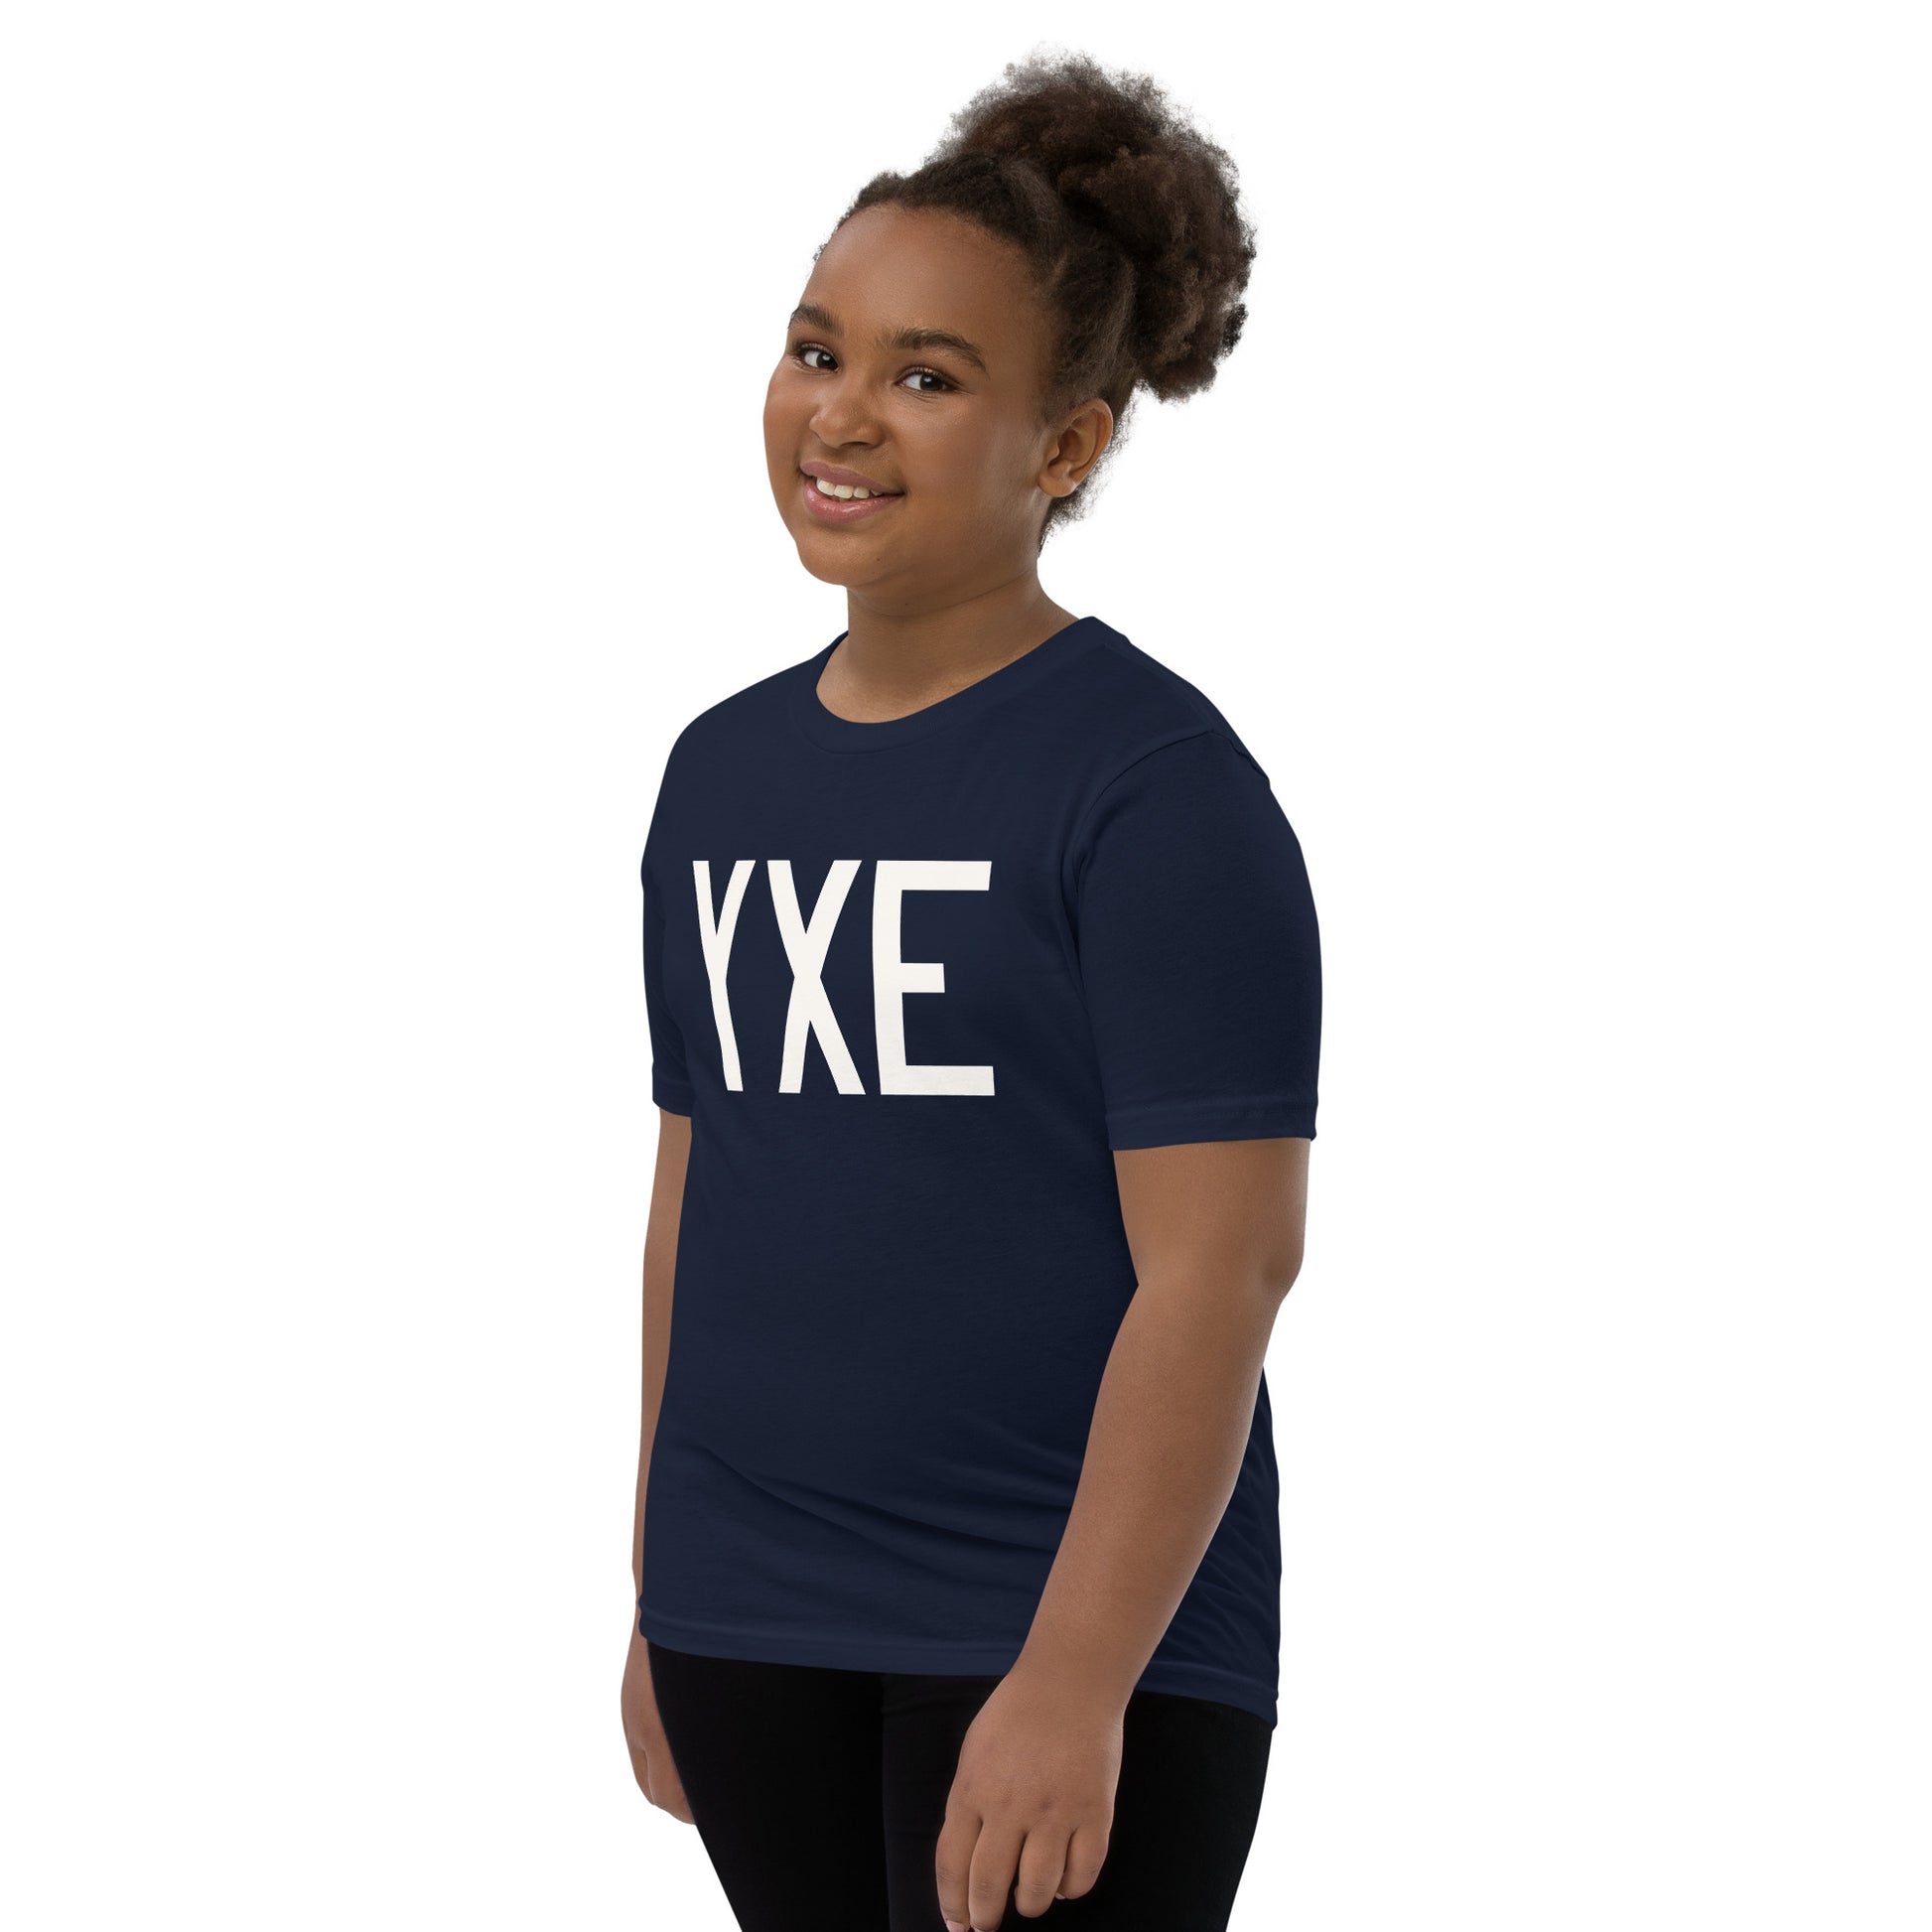 Kid's T-Shirt - White Graphic • YXE Saskatoon • YHM Designs - Image 02